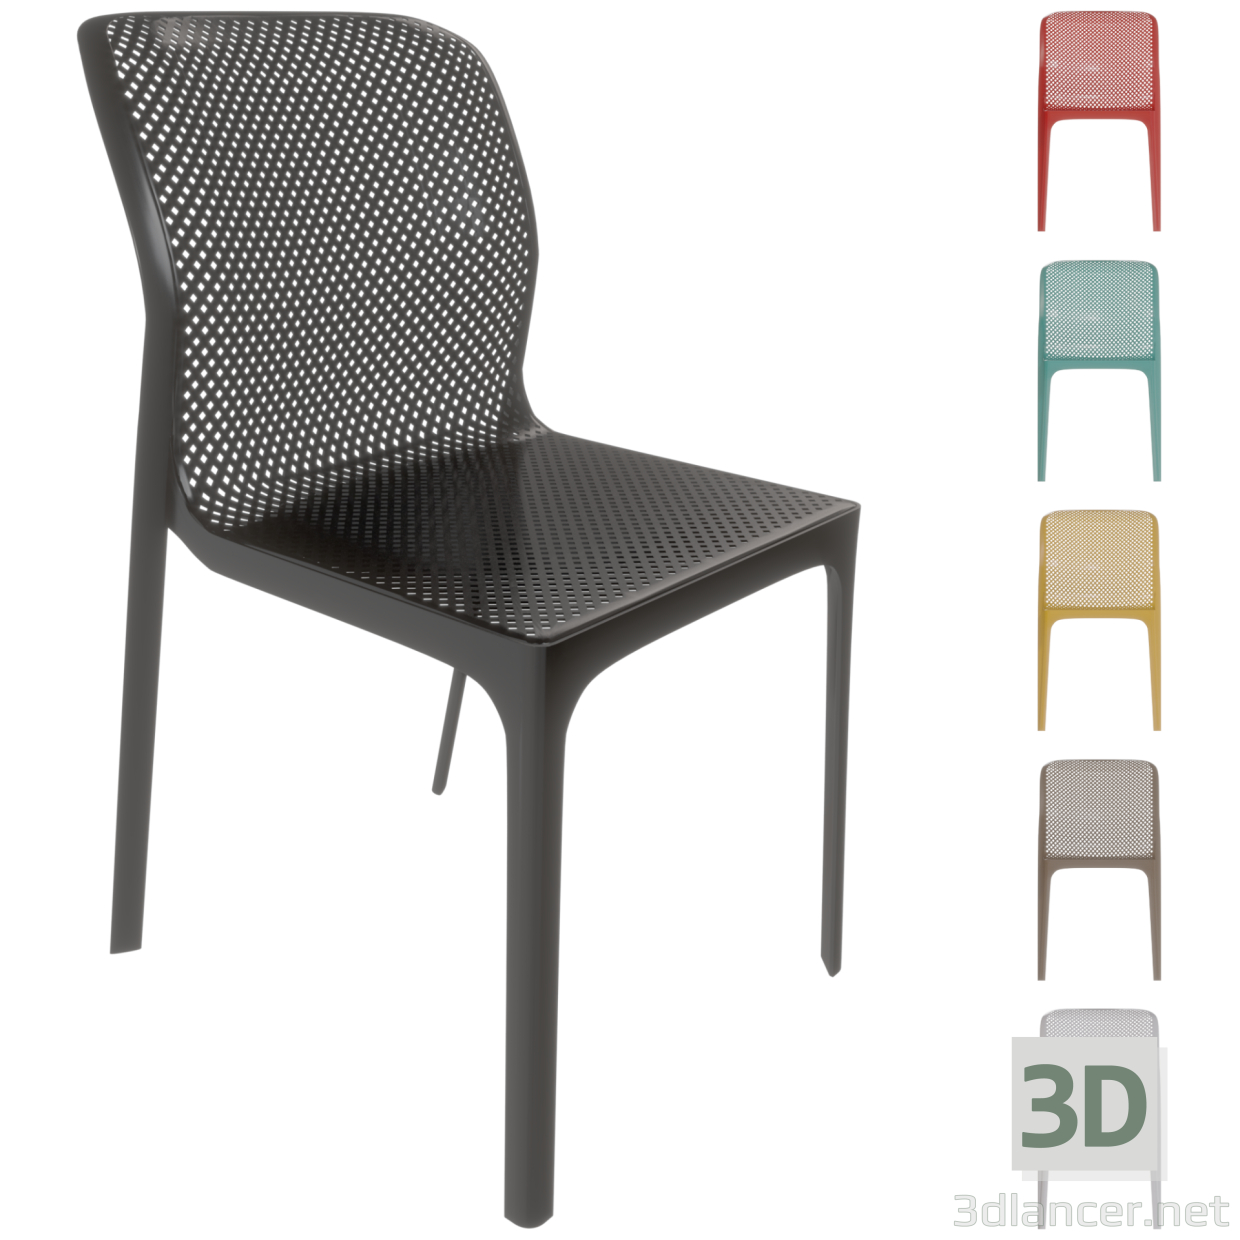 3 डी आर्मरेस्ट के बिना प्लास्टिक की कुर्सी BIT 6 अलग-अलग रंगों में ट्रेडमार्क नारदी। मॉडल खरीद - रेंडर